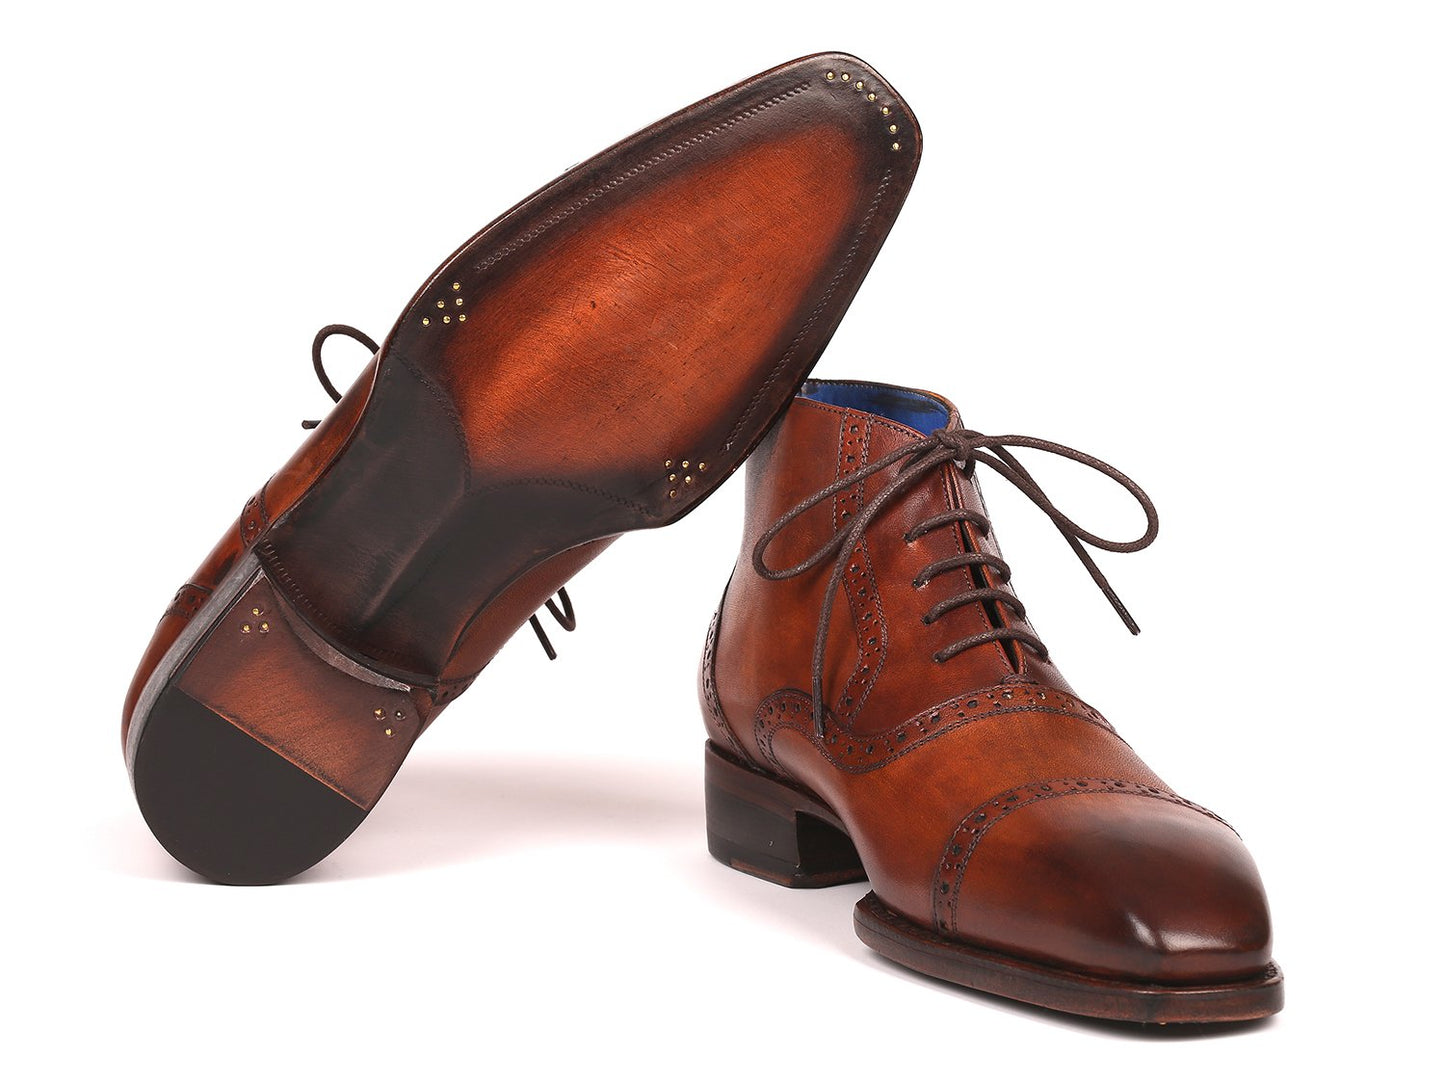 Paul Parkman Men's Antique Brown Cap Toe Ankle Boots (ID#646BRW15)